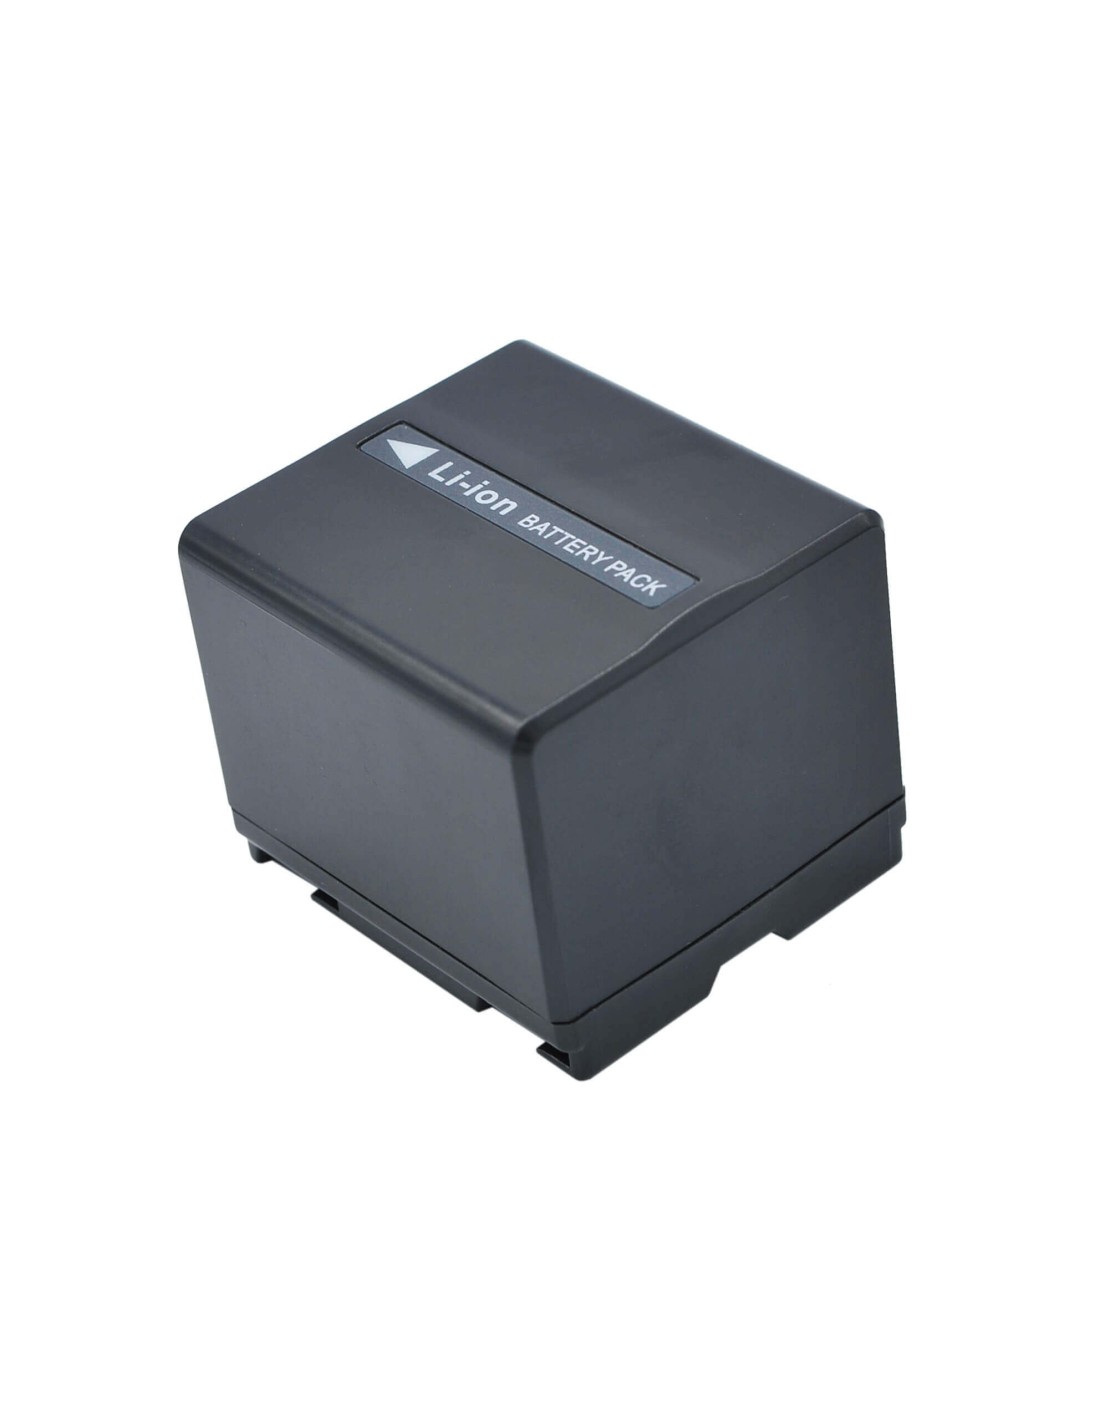 Battery for Hitachi Dz-bd70, Dz-bd7h, Dz-bx37e, Dz-gx20, 7.4V, 1440mAh - 10.66Wh